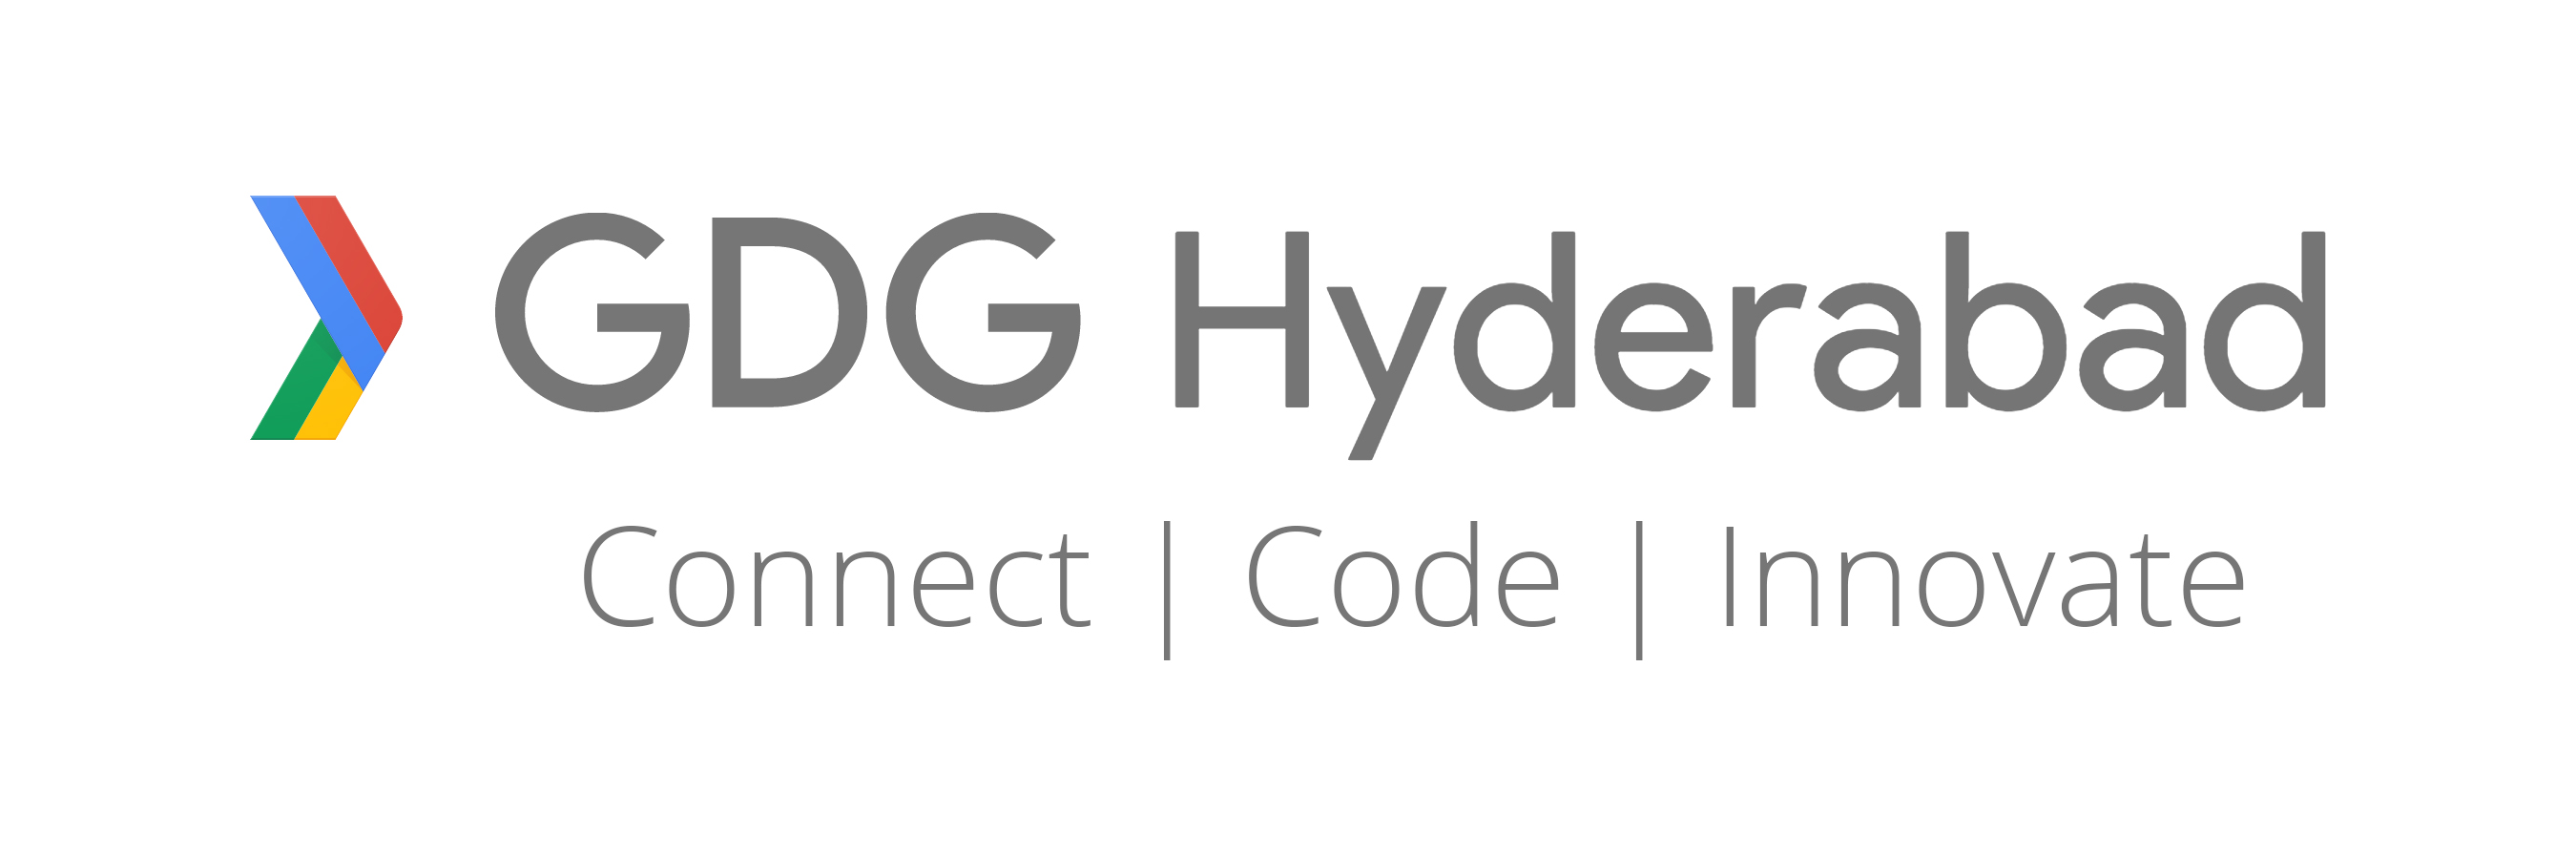 GDG Hyd with tagline logo.jpg